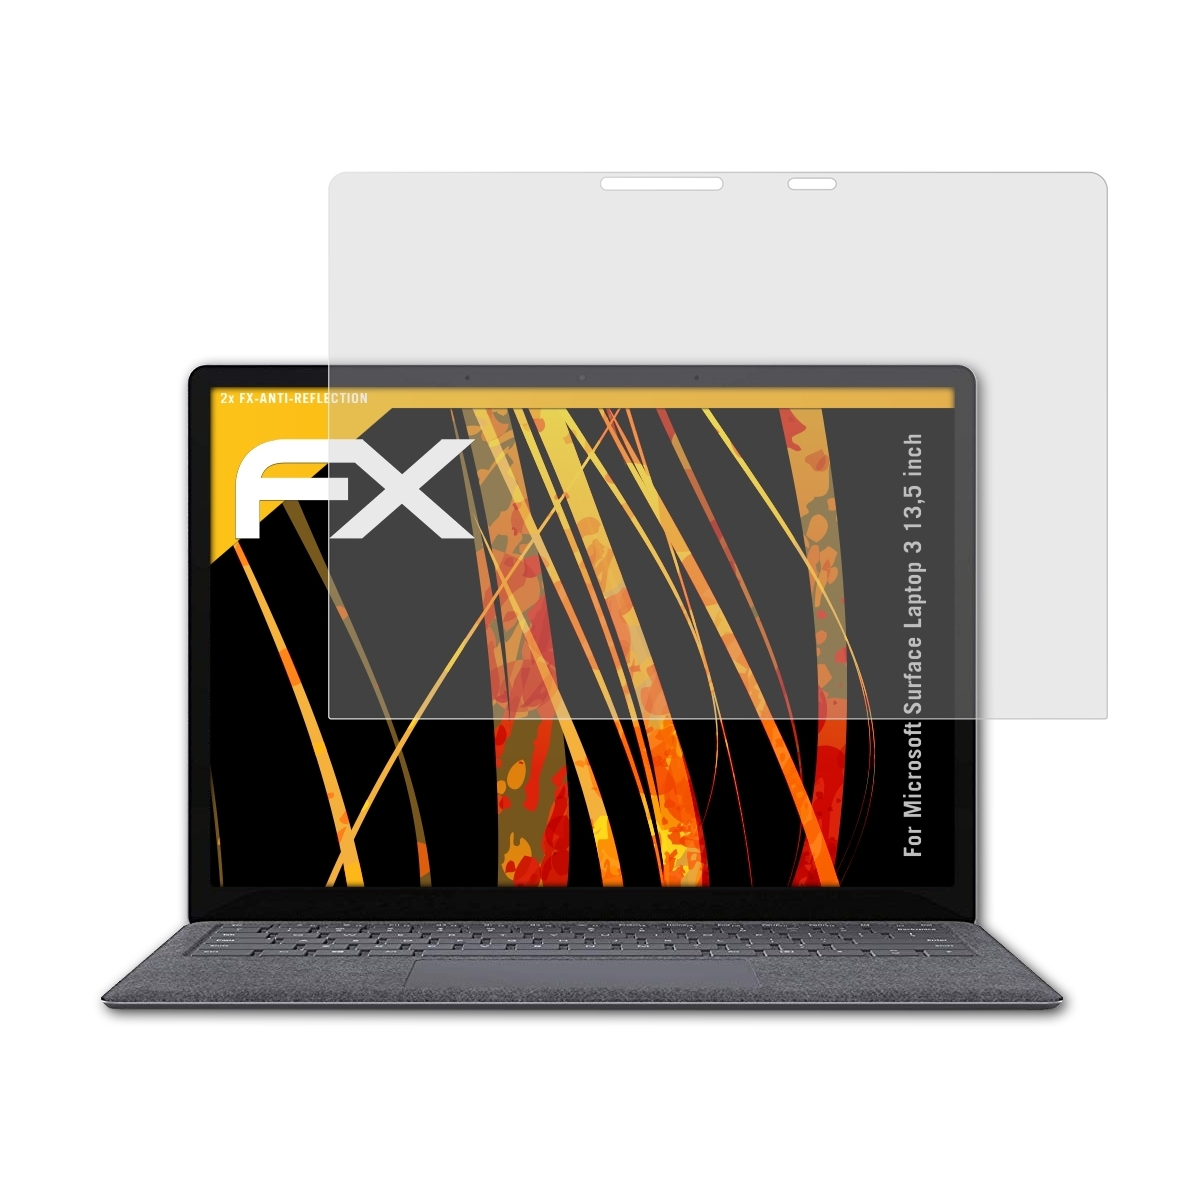 ATFOLIX (13,5 3 inch)) Displayschutz(für Surface Microsoft FX-Antireflex 2x Laptop